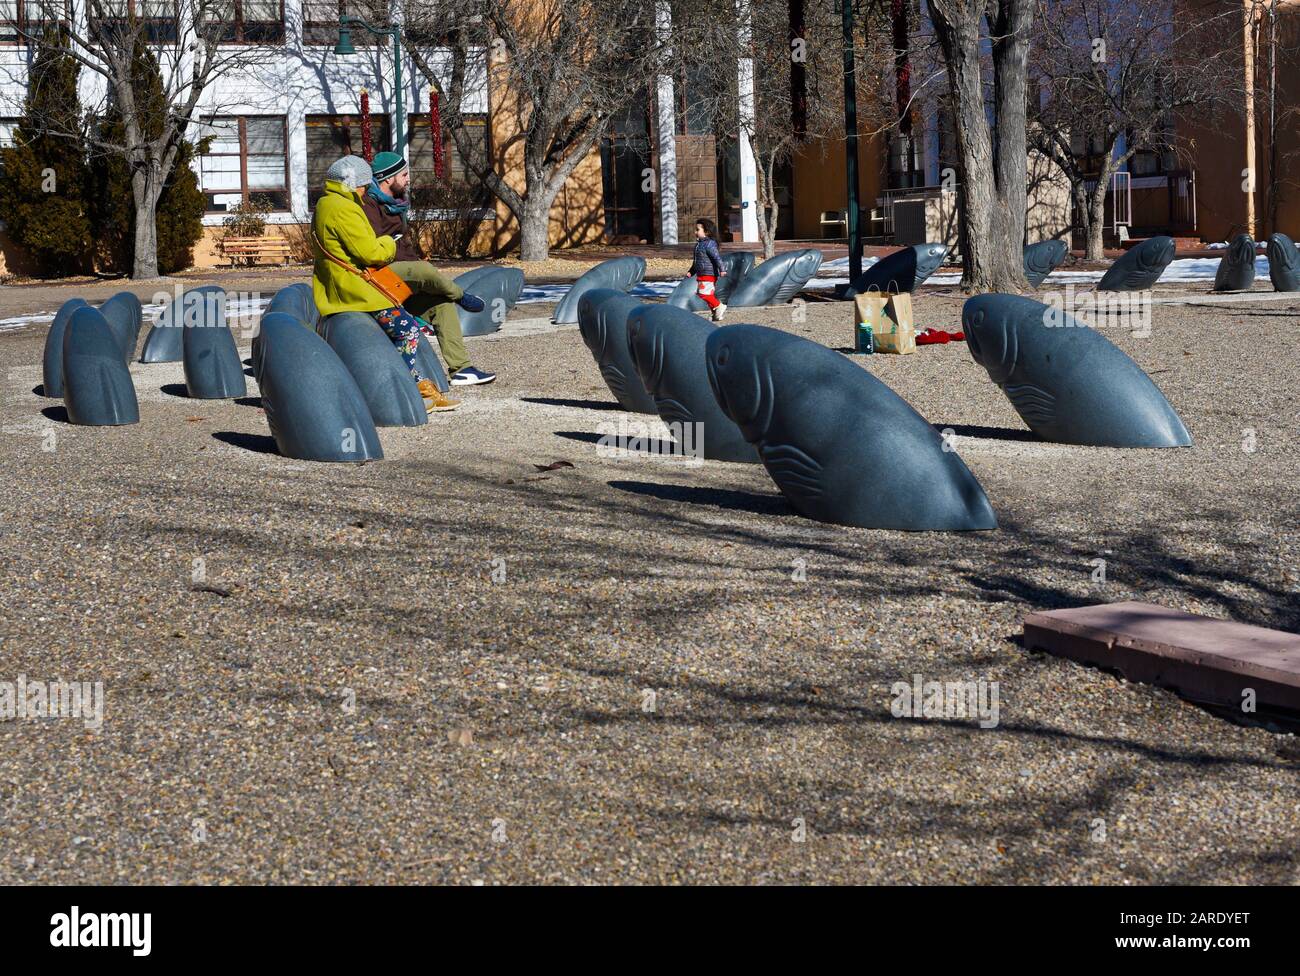 Un couple avec un jeune enfant bénéficie d'une installation d'art public en plein air à Santa Fe, au Nouveau-Mexique. Banque D'Images